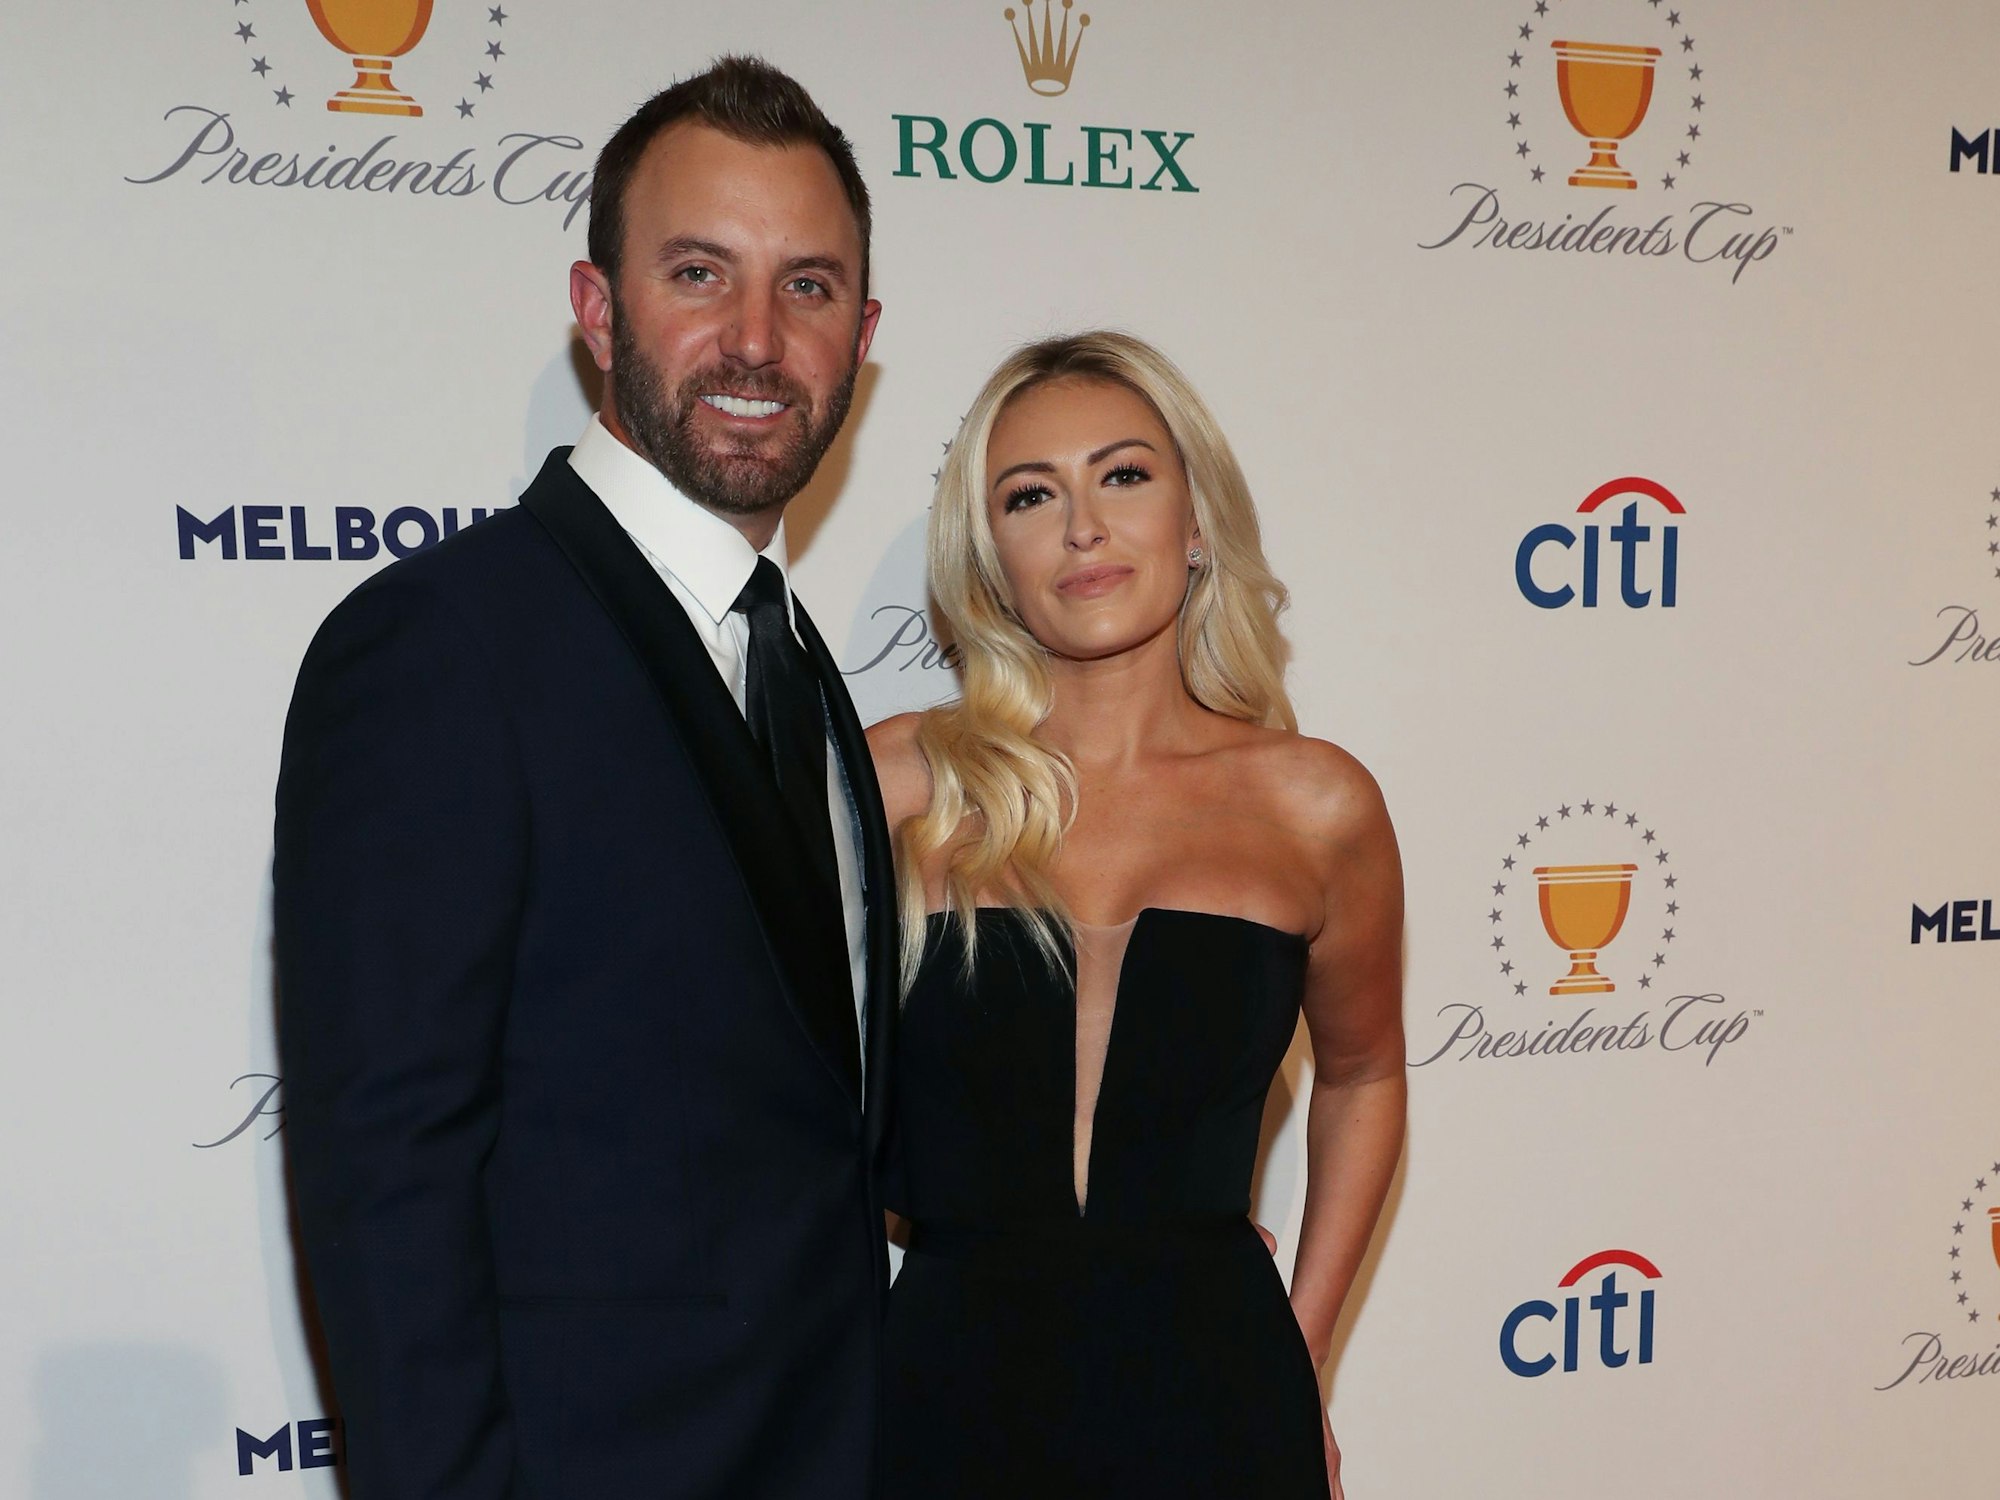 Dustin Johnson und Paulina Gretzky auf der Golf Präsidenten-Gala 2019